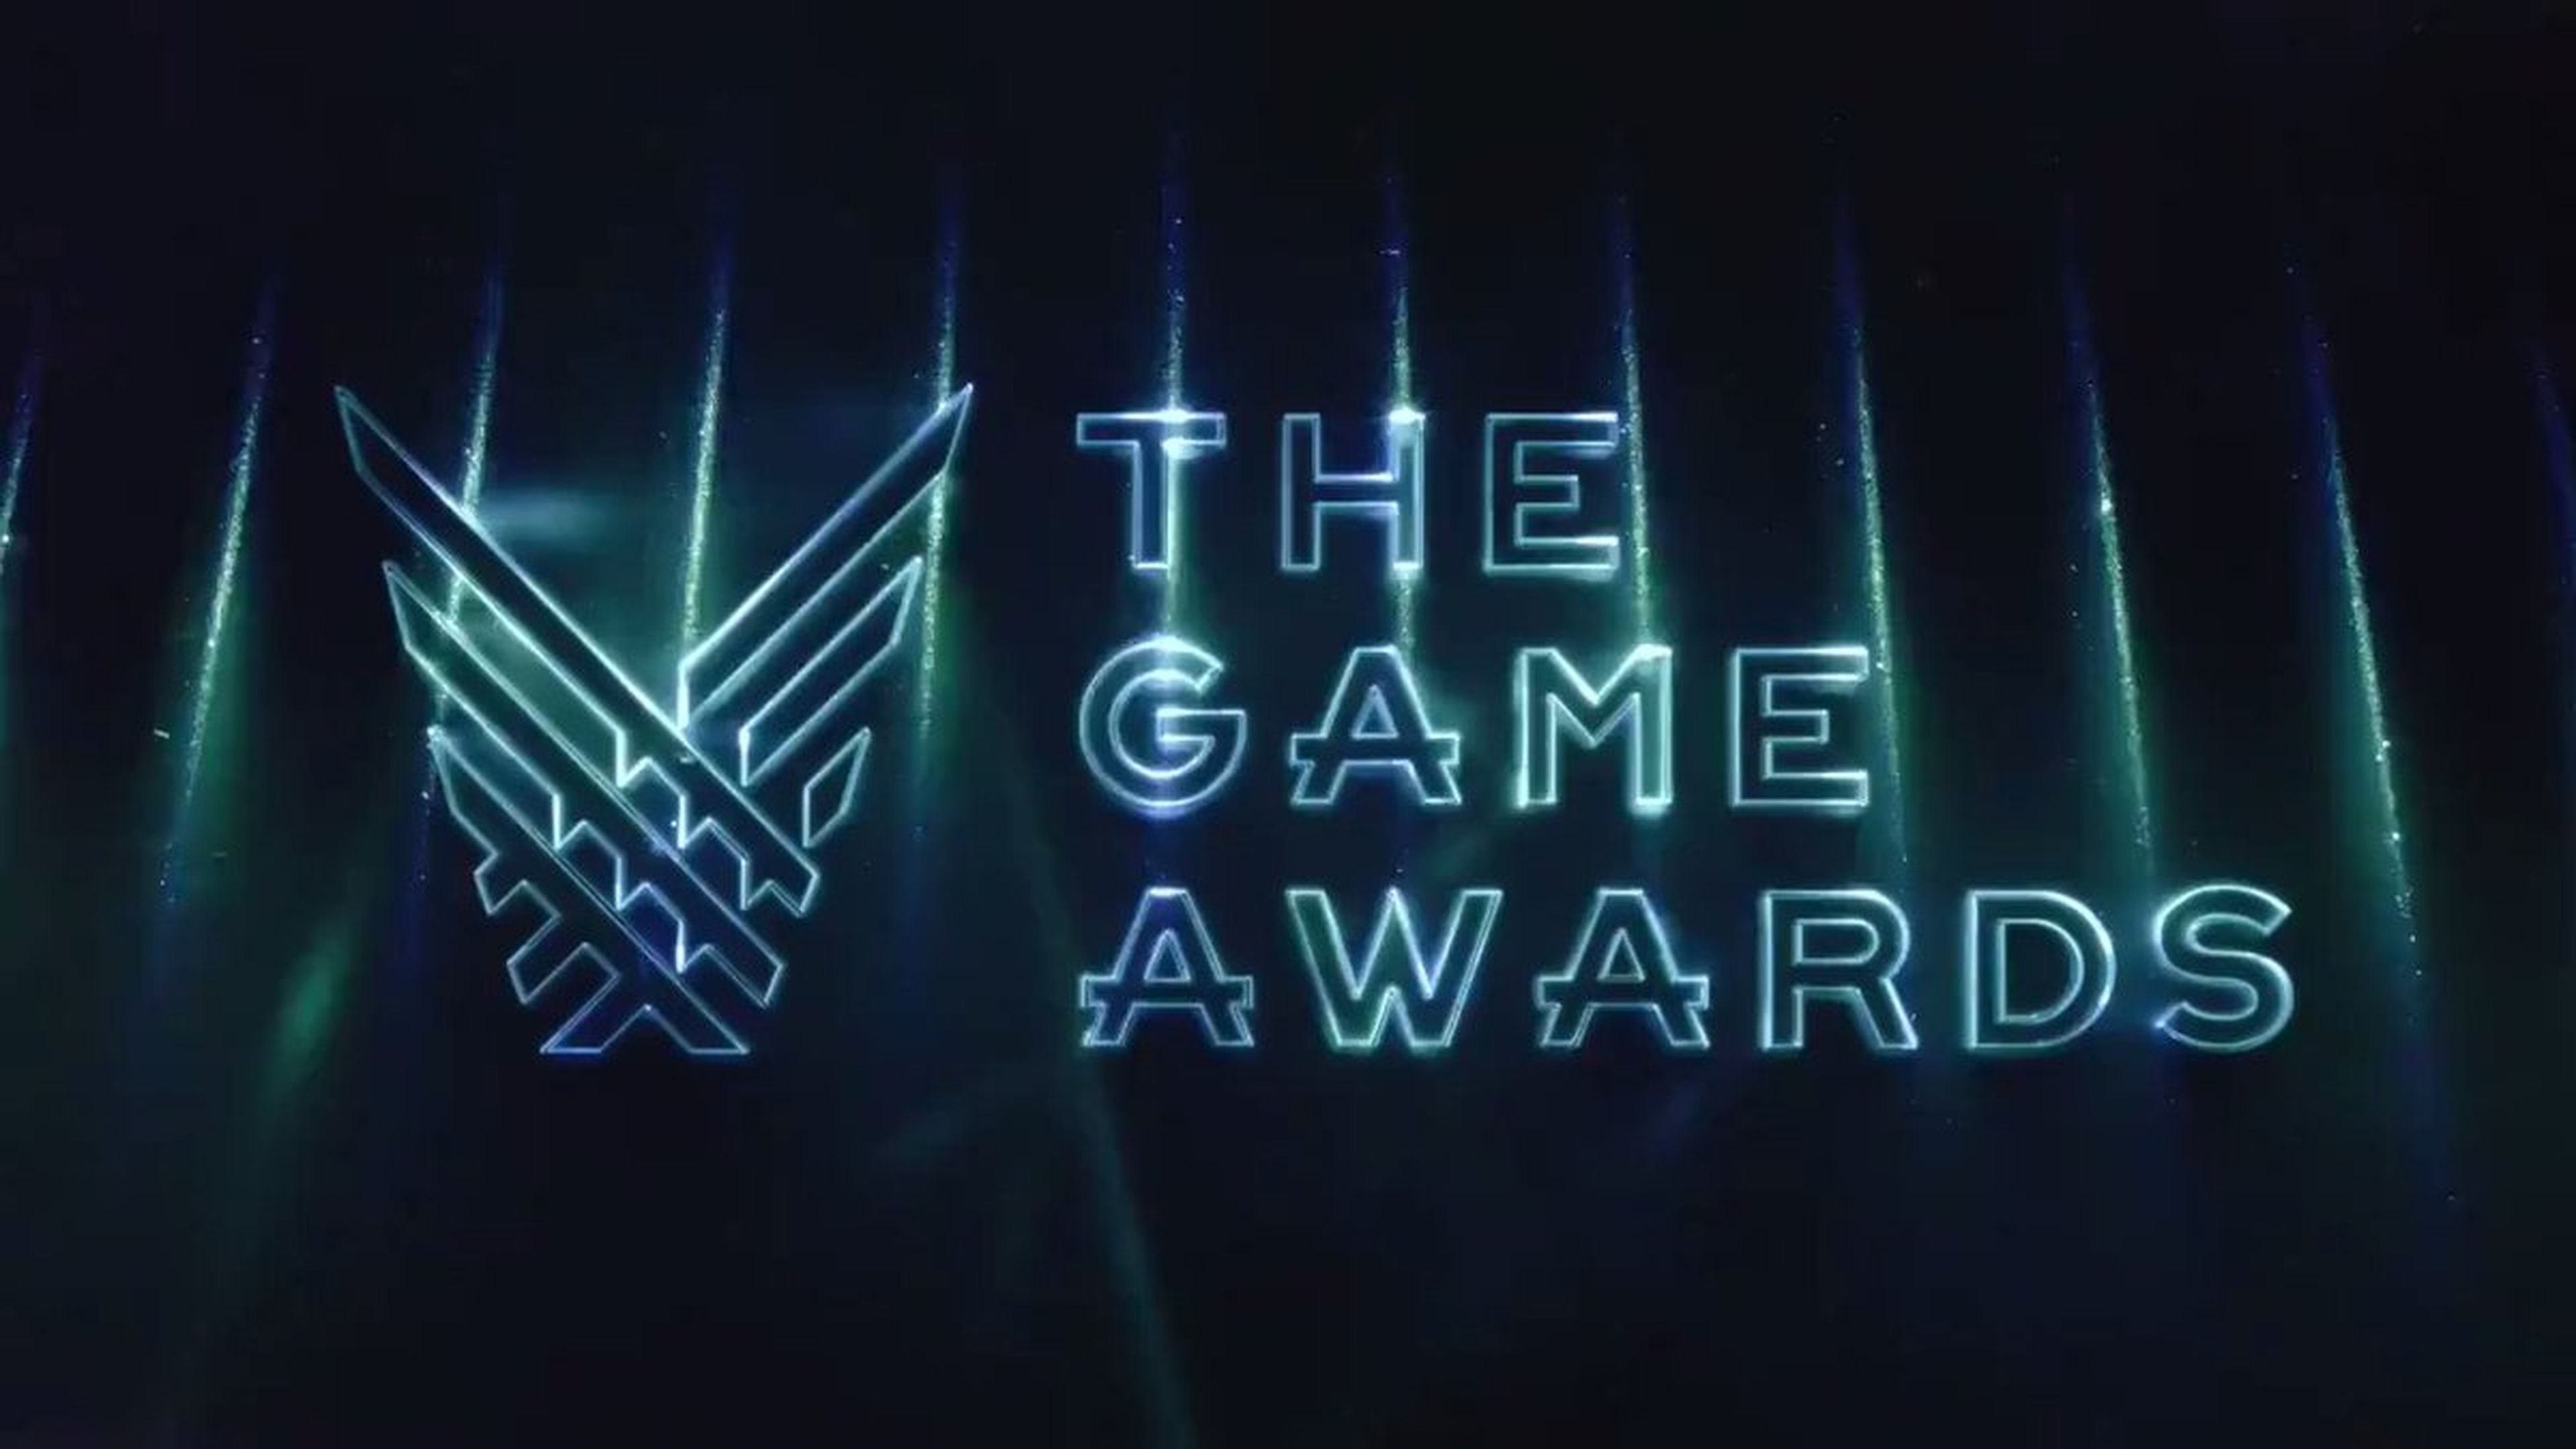 A qué hora comienzan los The Game Awards 2021?